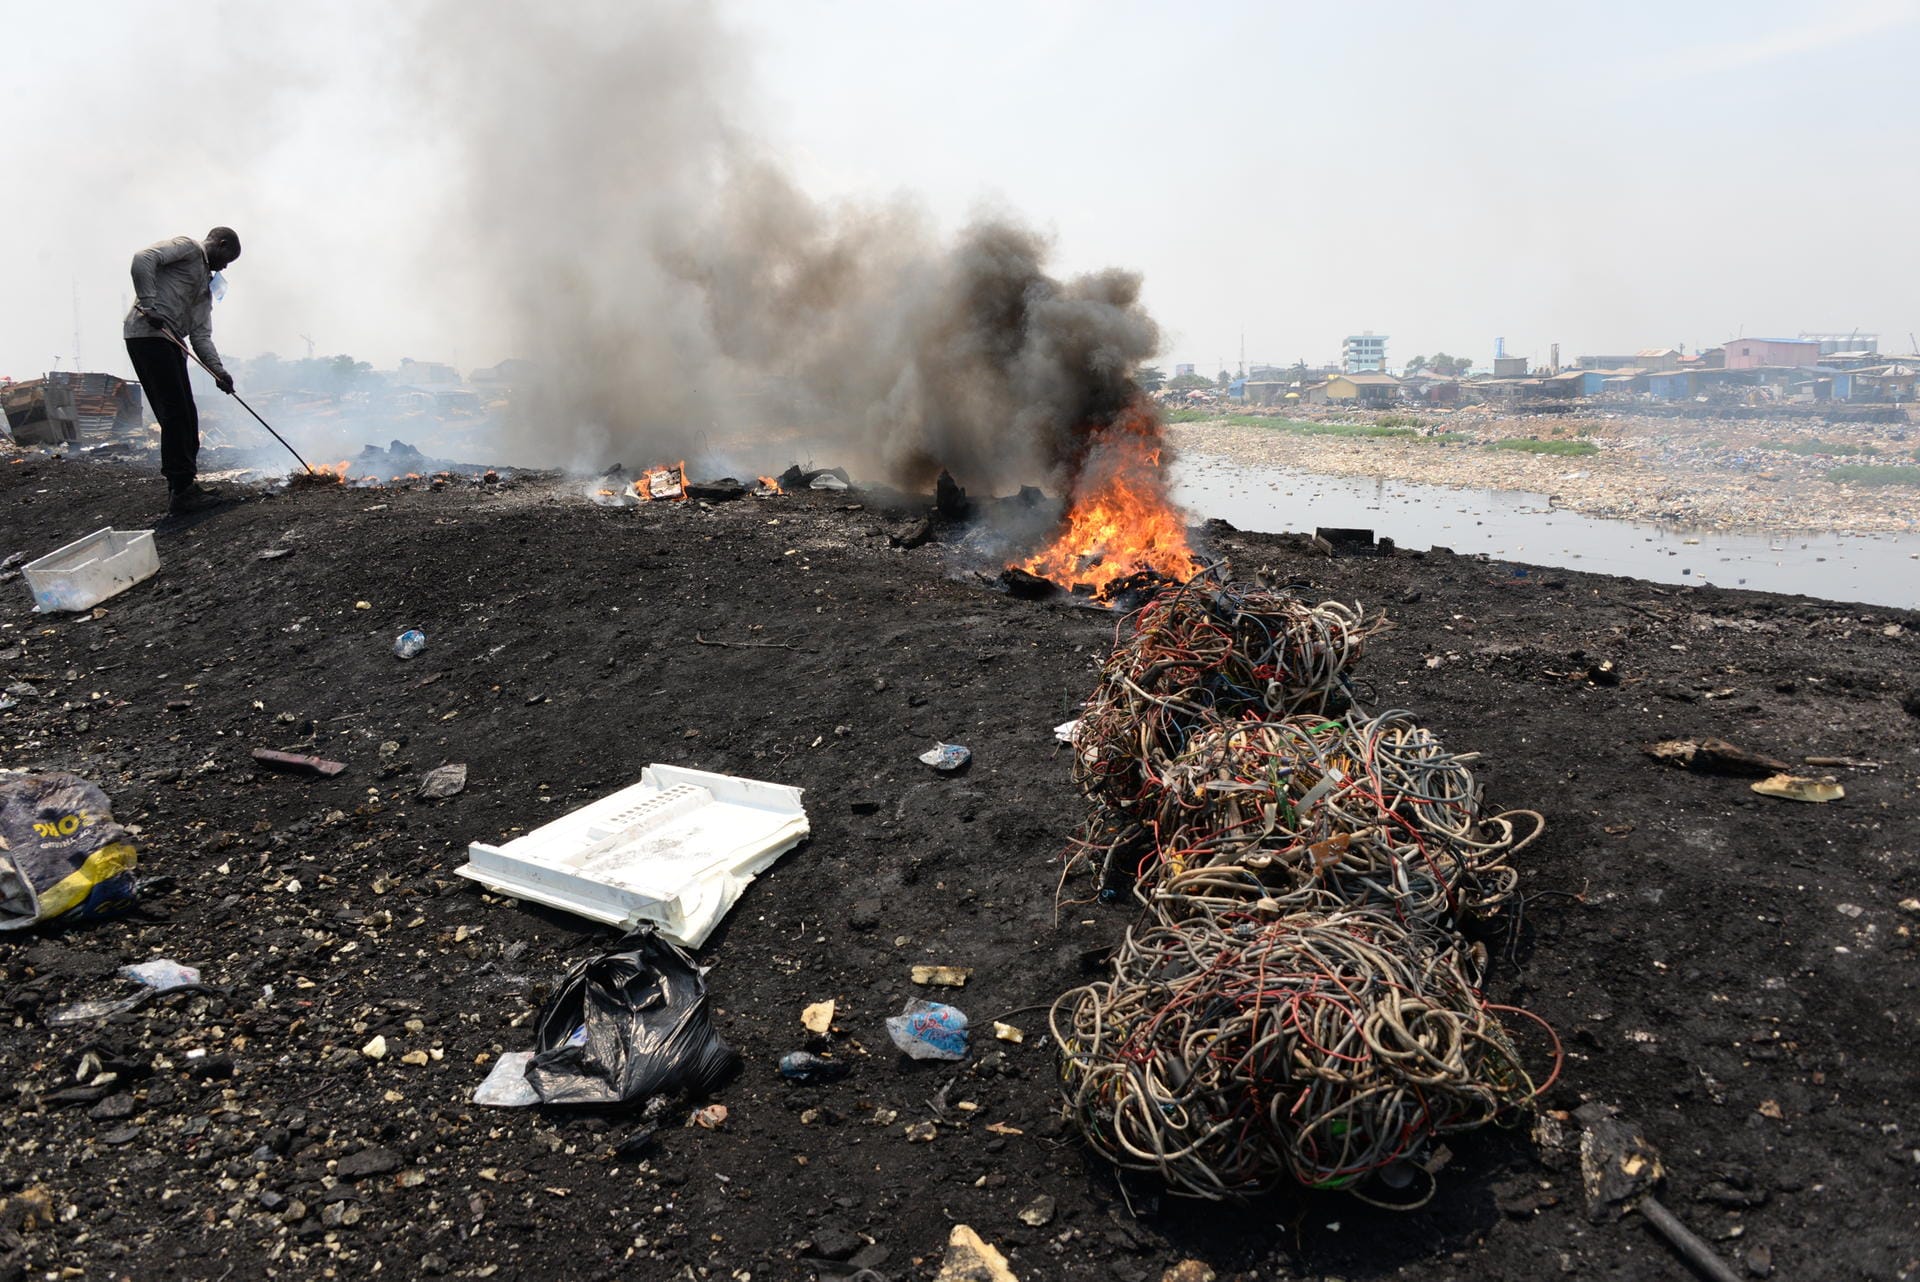 Männer verbrennen auf dem Schrottplatz Agbogbloshie Kabel und andere Teile alter Elektrogeräte.